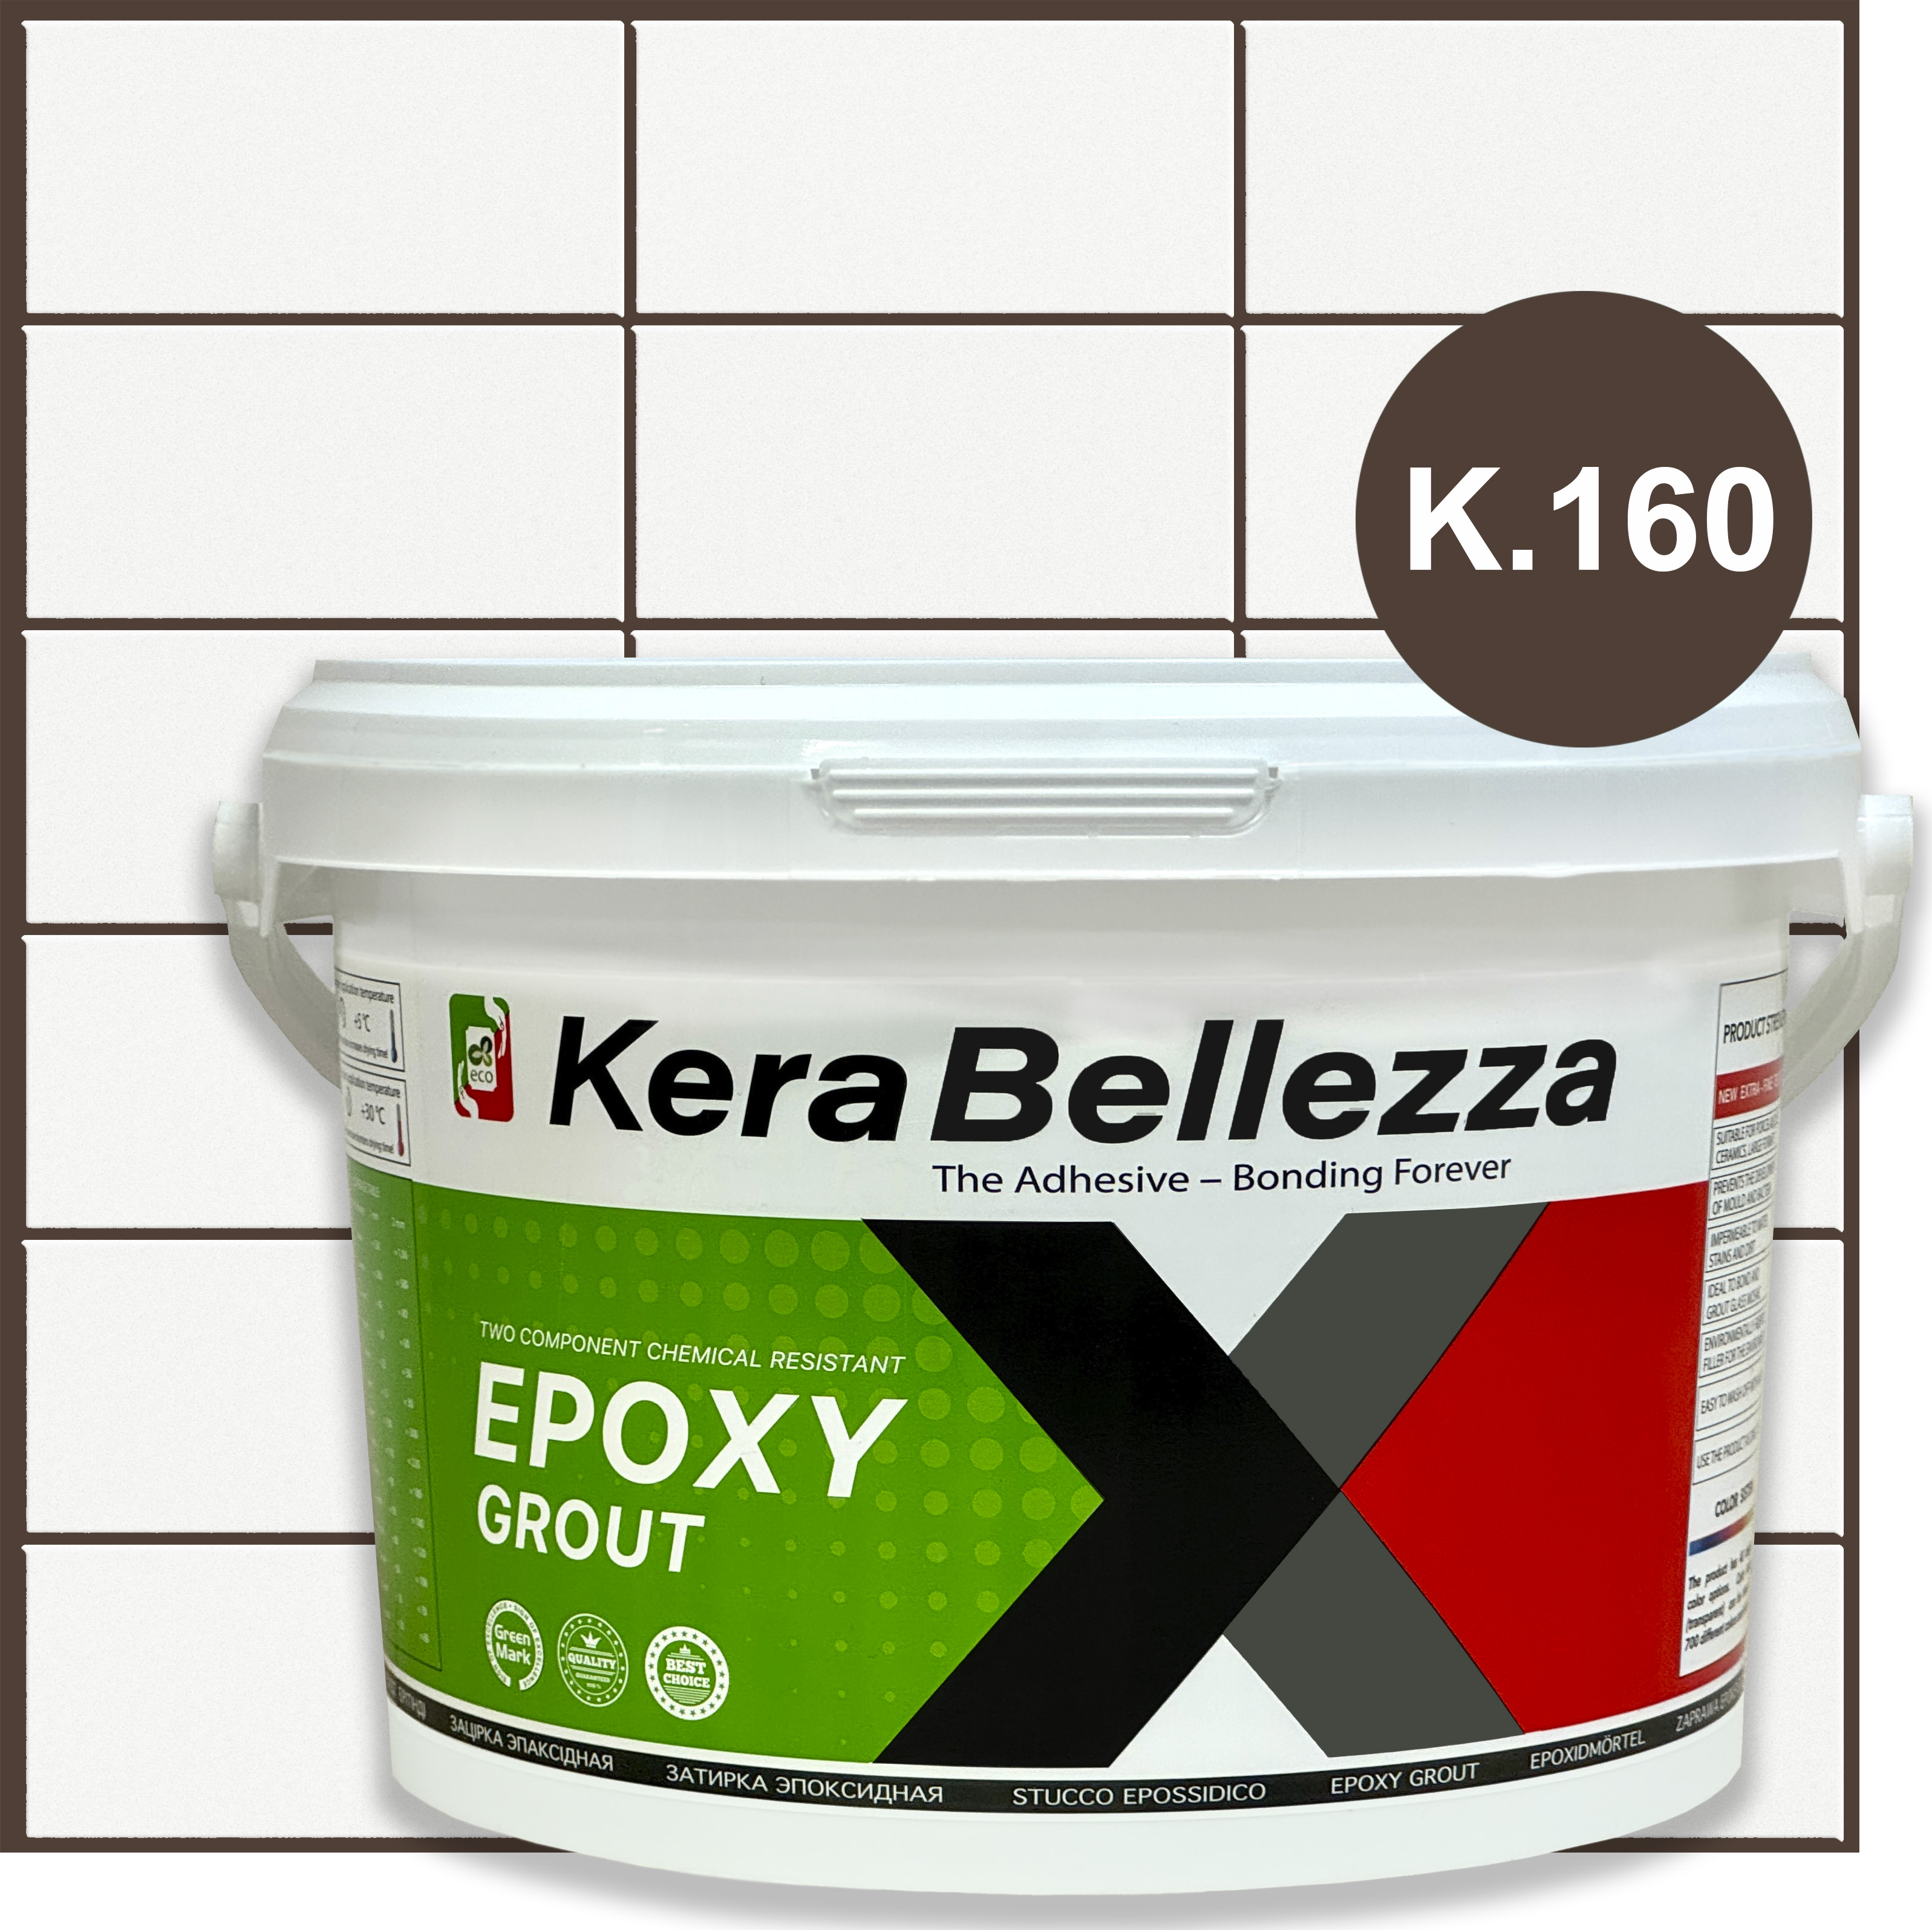 Затирка цветная эпоксидная KeraBellezza Design К160 Сиена 0.33 кг.